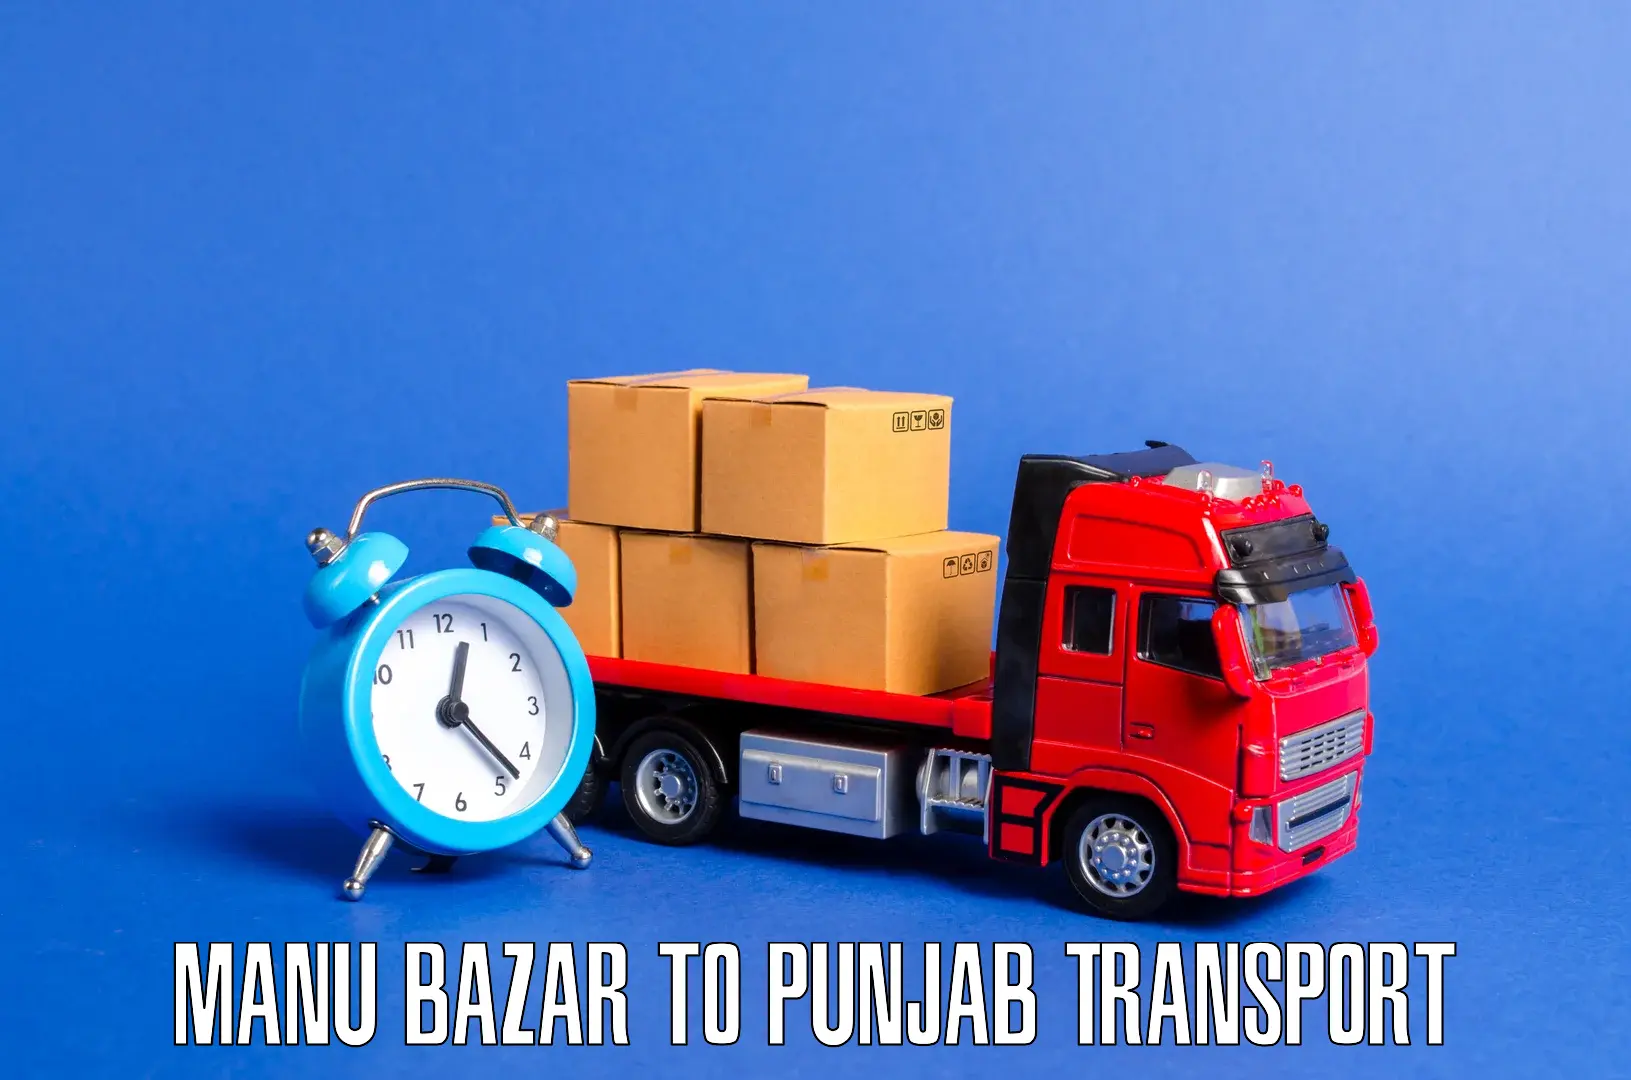 Shipping services Manu Bazar to Dinanagar